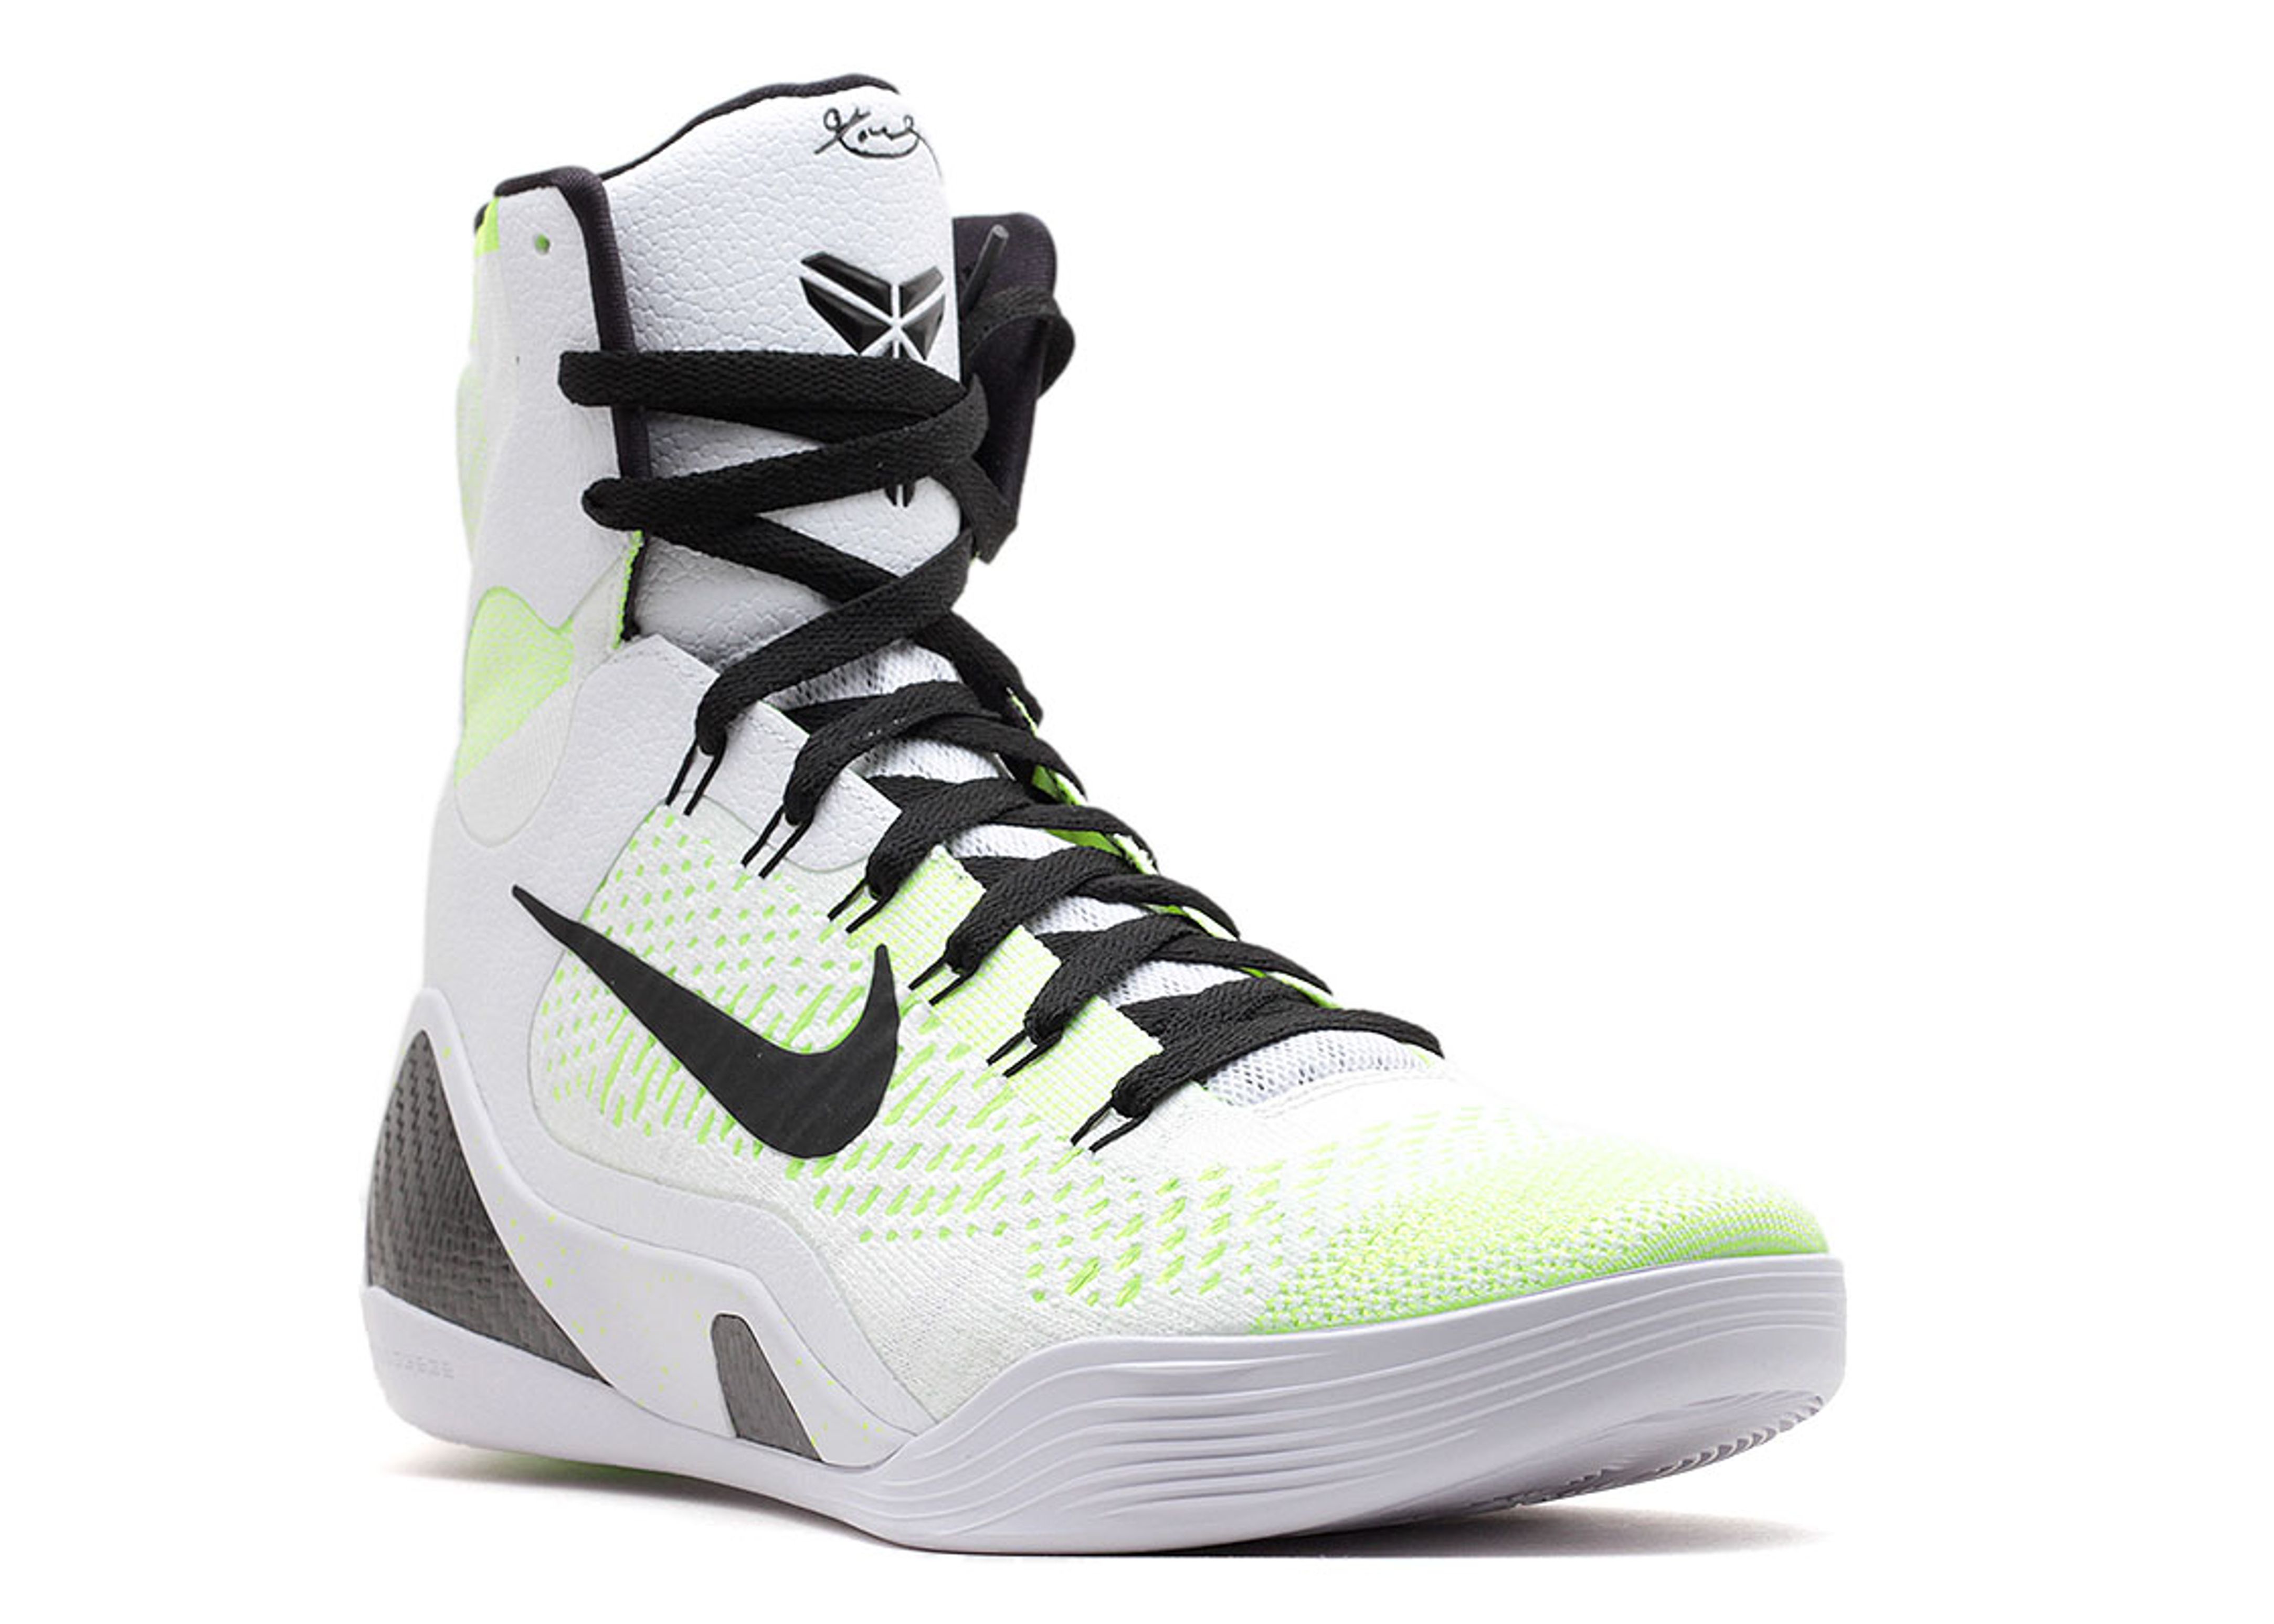 Kobe 9 Elite Premium QS 'Volt' - Nike - 678301 107 - white/black 